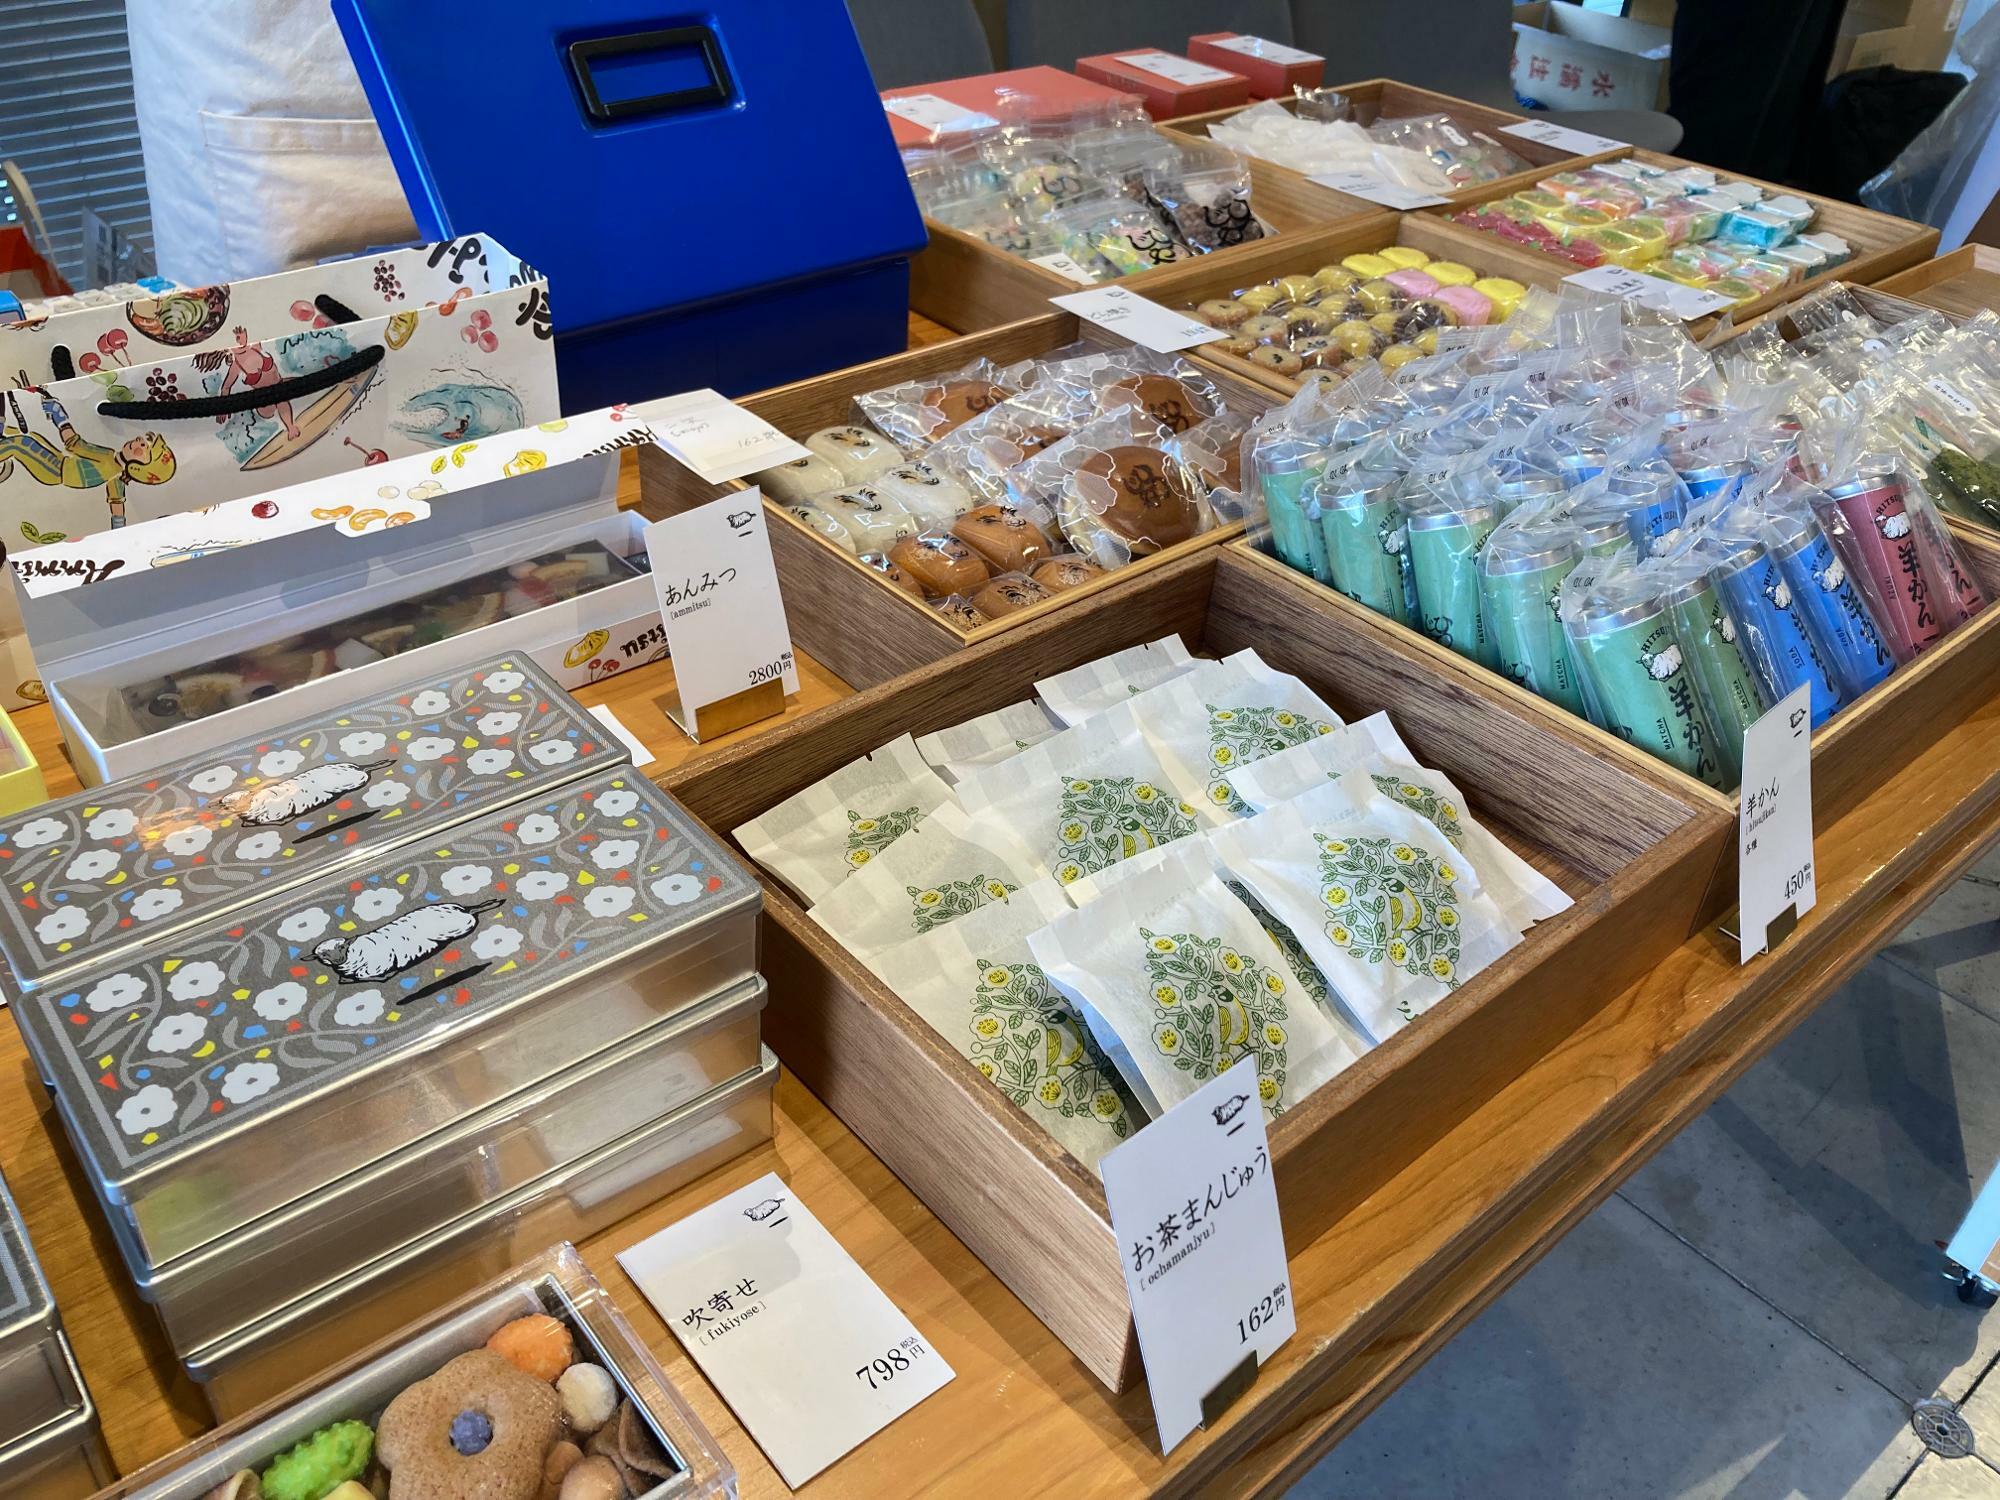 福岡のお菓子のお店「ひつじや」さん。東京の仙川にも支店ができたそう。お茶まんじゅうは福岡の本店限定で八女茶の餡子が入っています